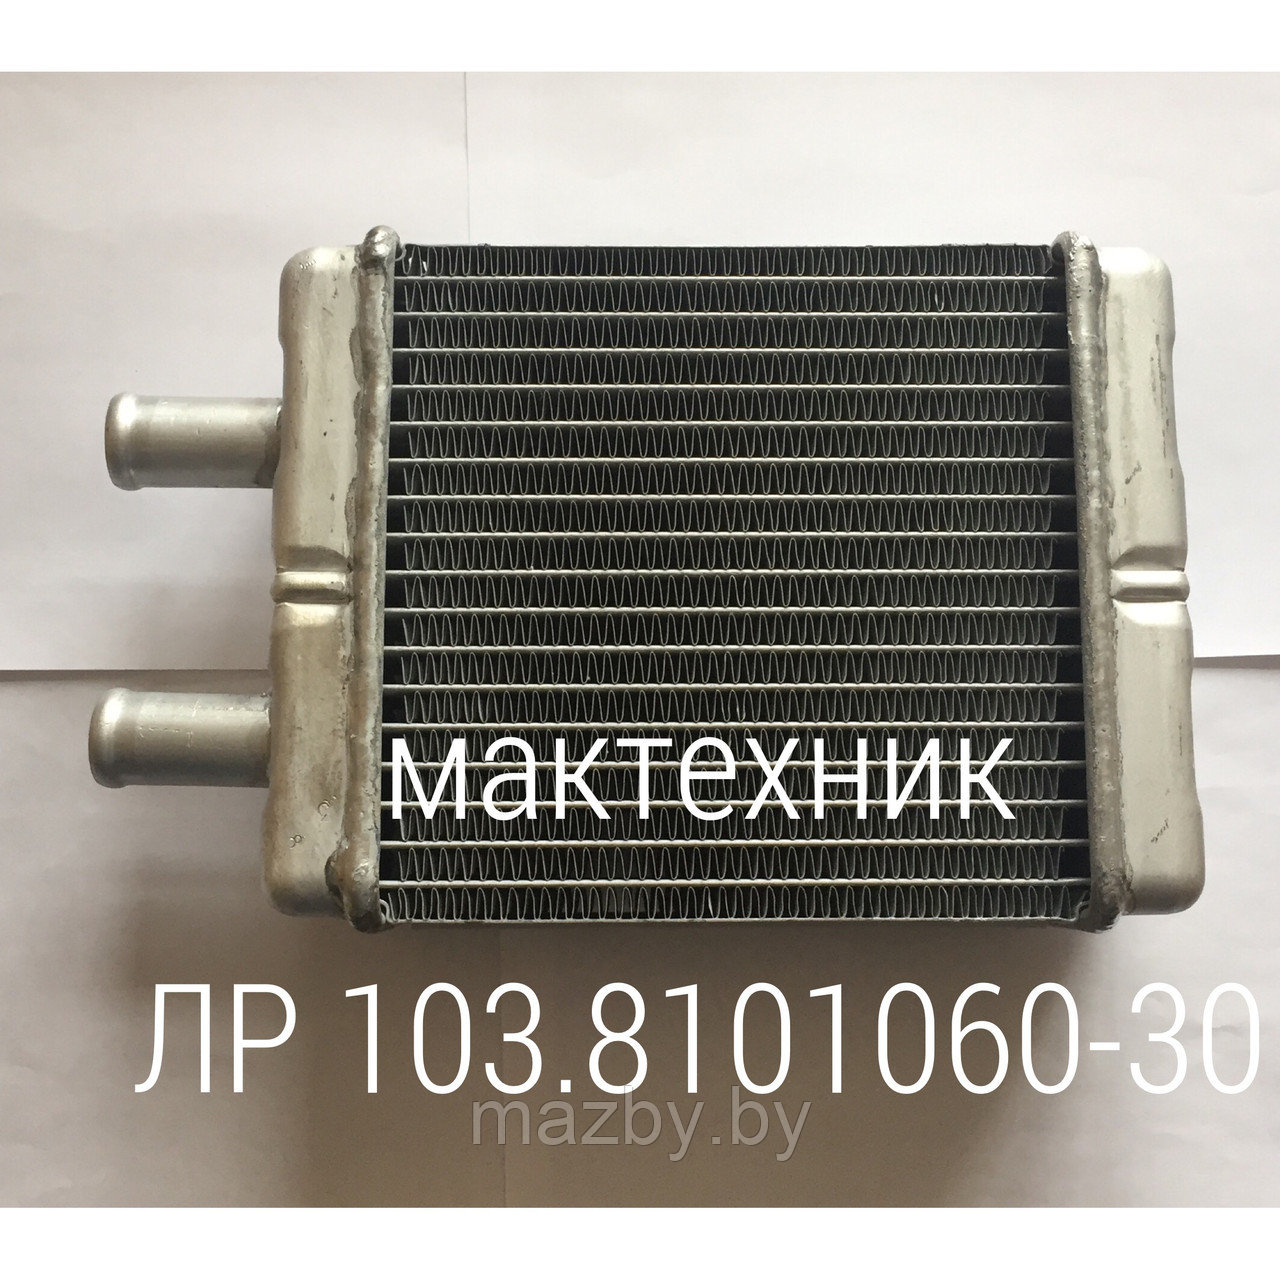 12103-8101060-30  радиатор отопителя автобус МАЗ ( 103-8101060-30 ) А1-306.242.251